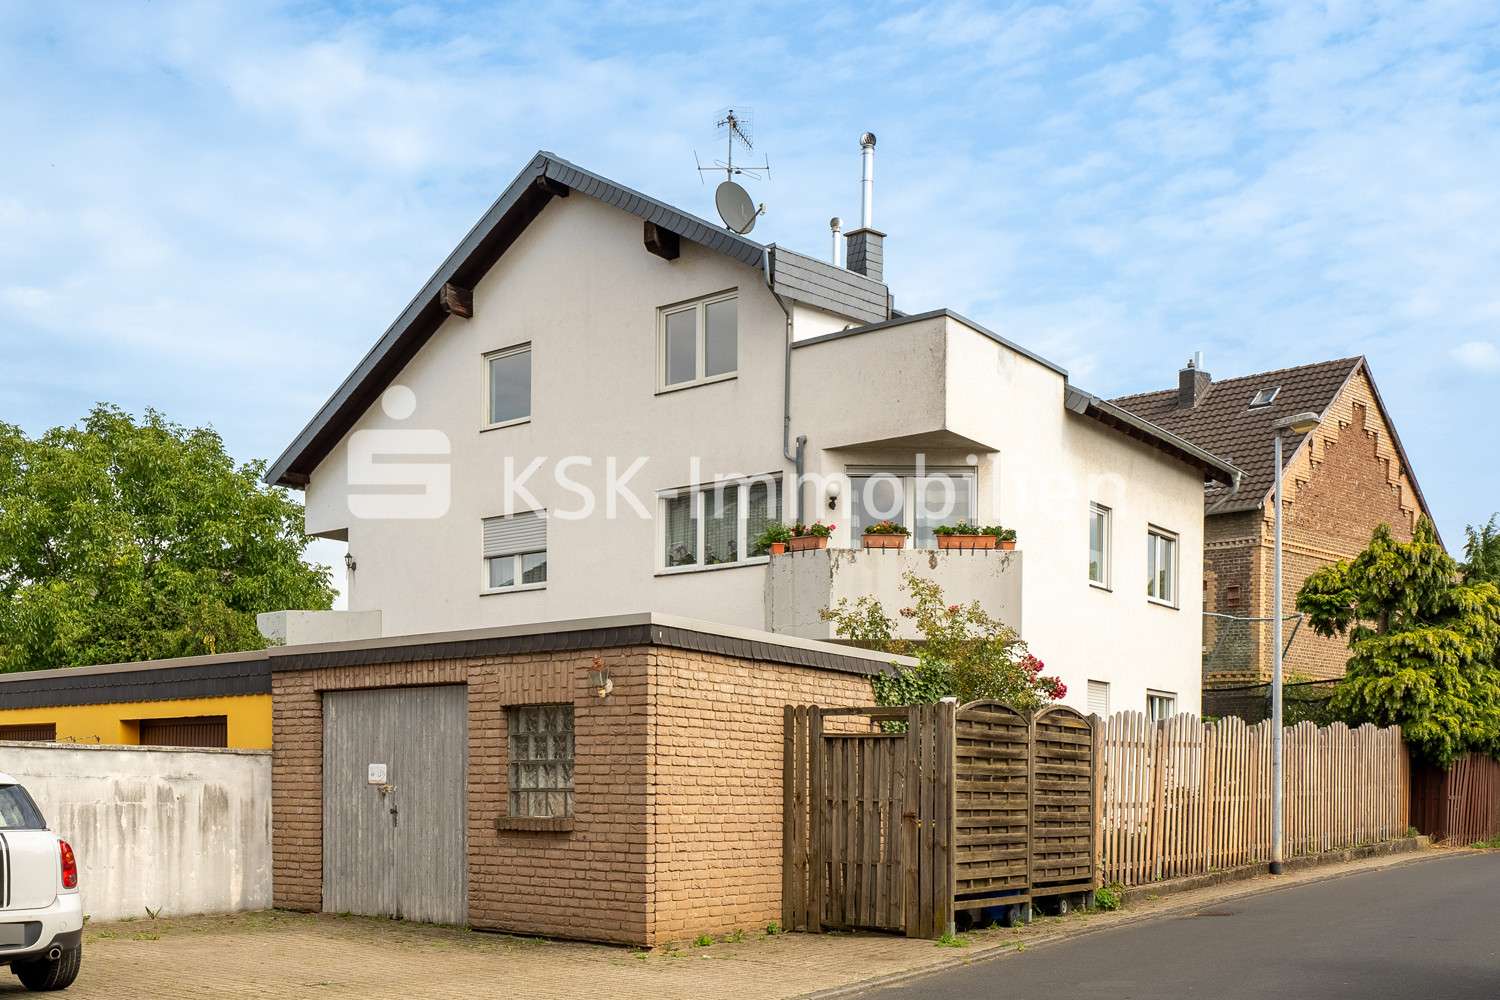 120265 Außenansicht - Dachgeschosswohnung in 50374 Erftstadt / Köttingen mit 102m² kaufen